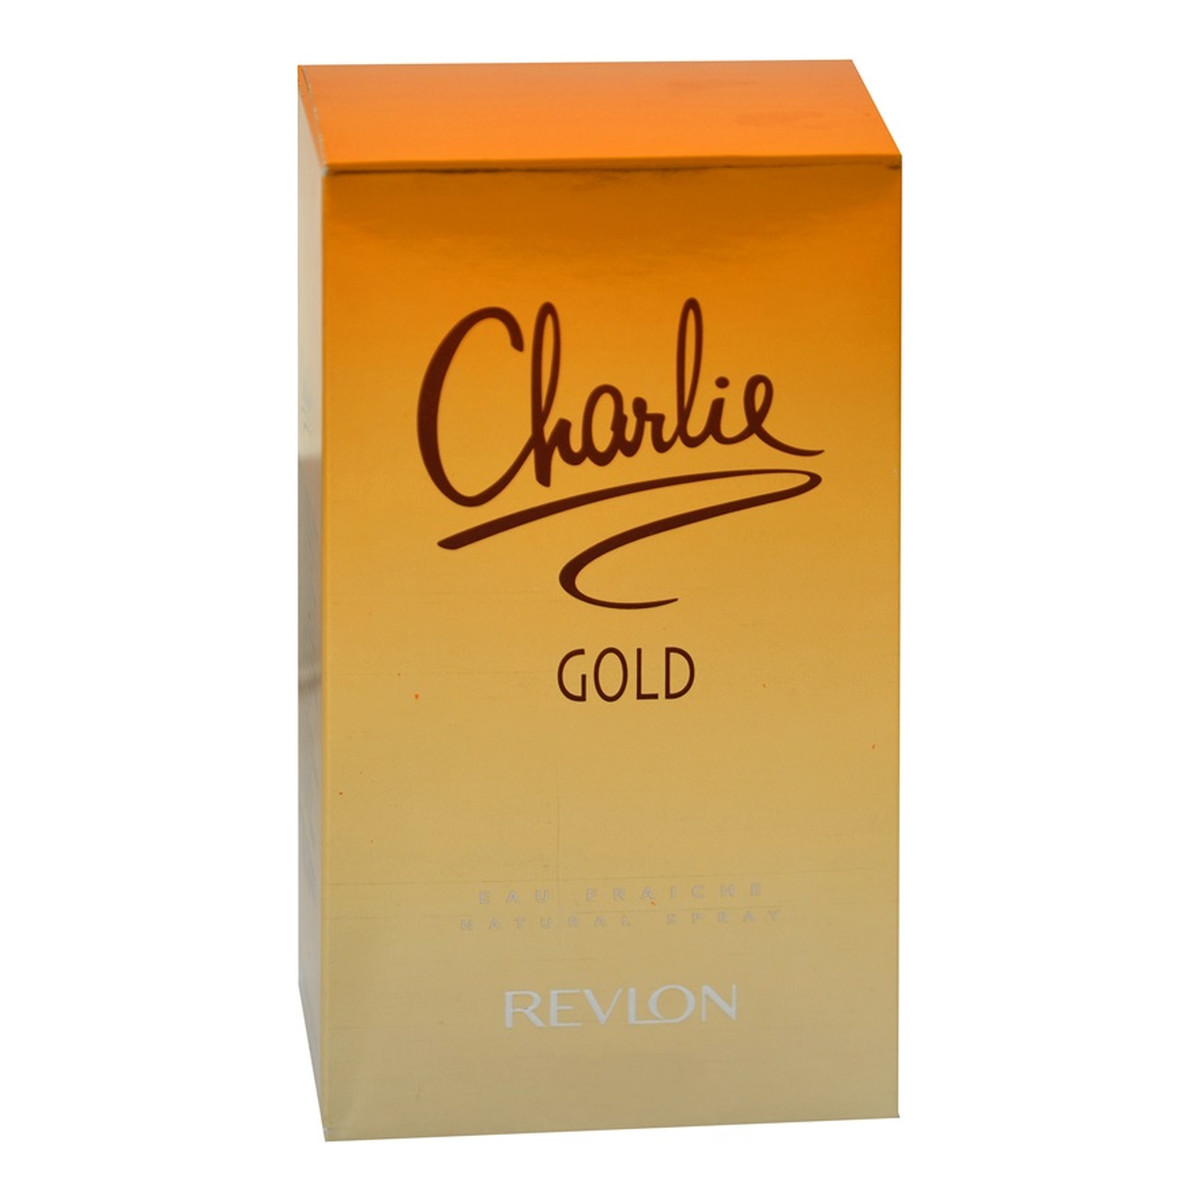 Revlon Charlie Gold woda toaletowa dla kobiet 100ml